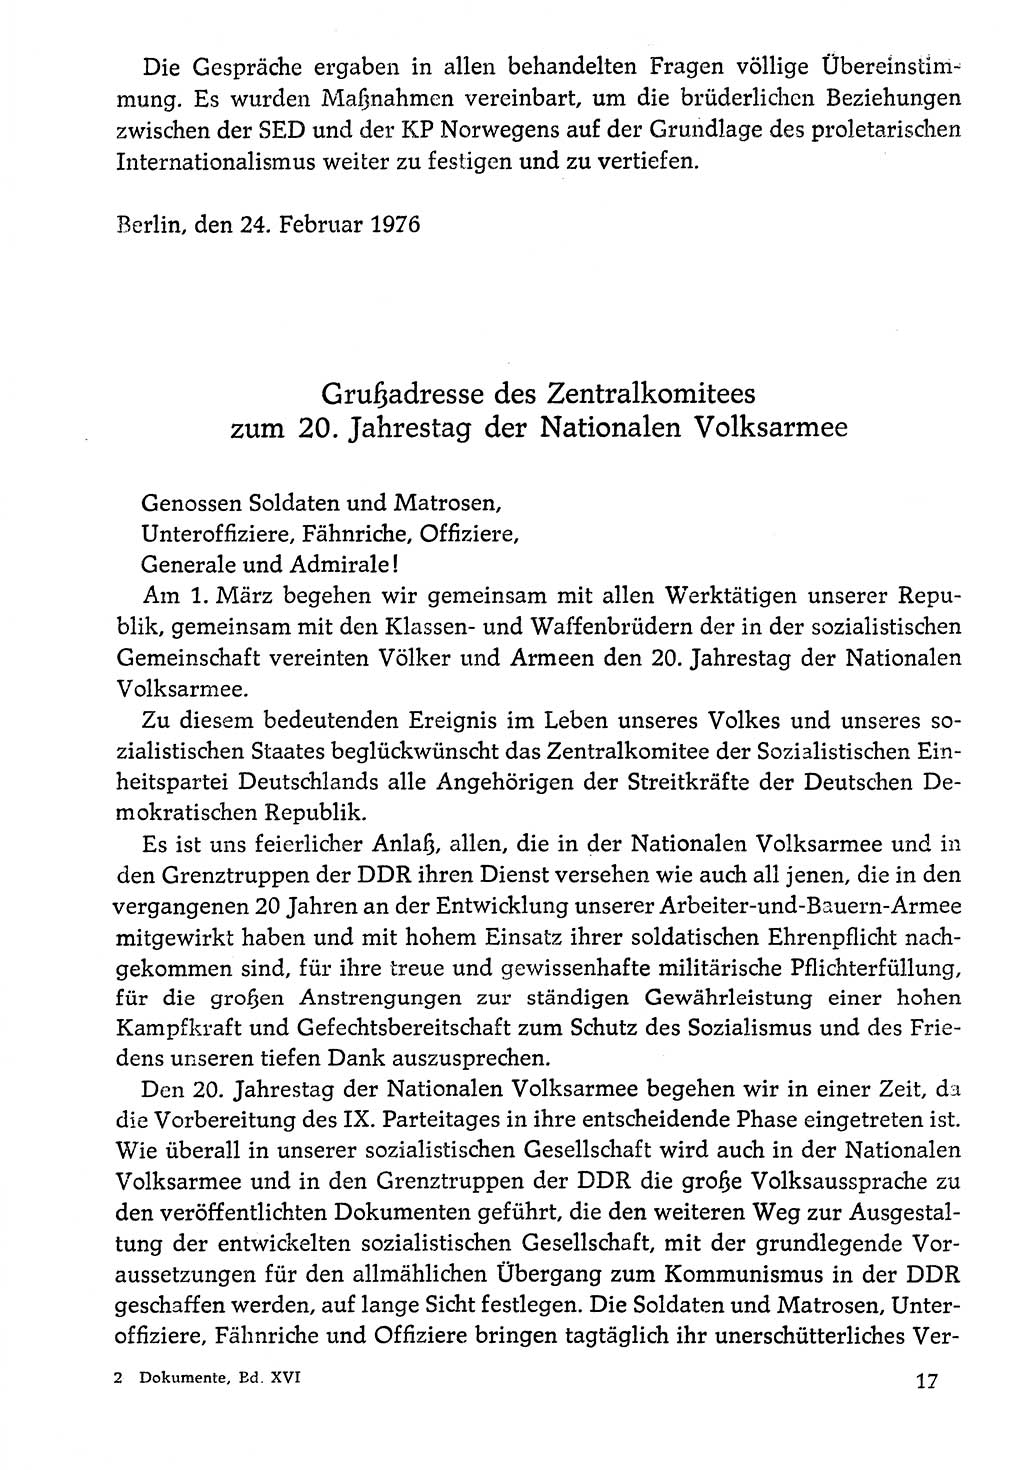 Dokumente der Sozialistischen Einheitspartei Deutschlands (SED) [Deutsche Demokratische Republik (DDR)] 1976-1977, Seite 17 (Dok. SED DDR 1976-1977, S. 17)